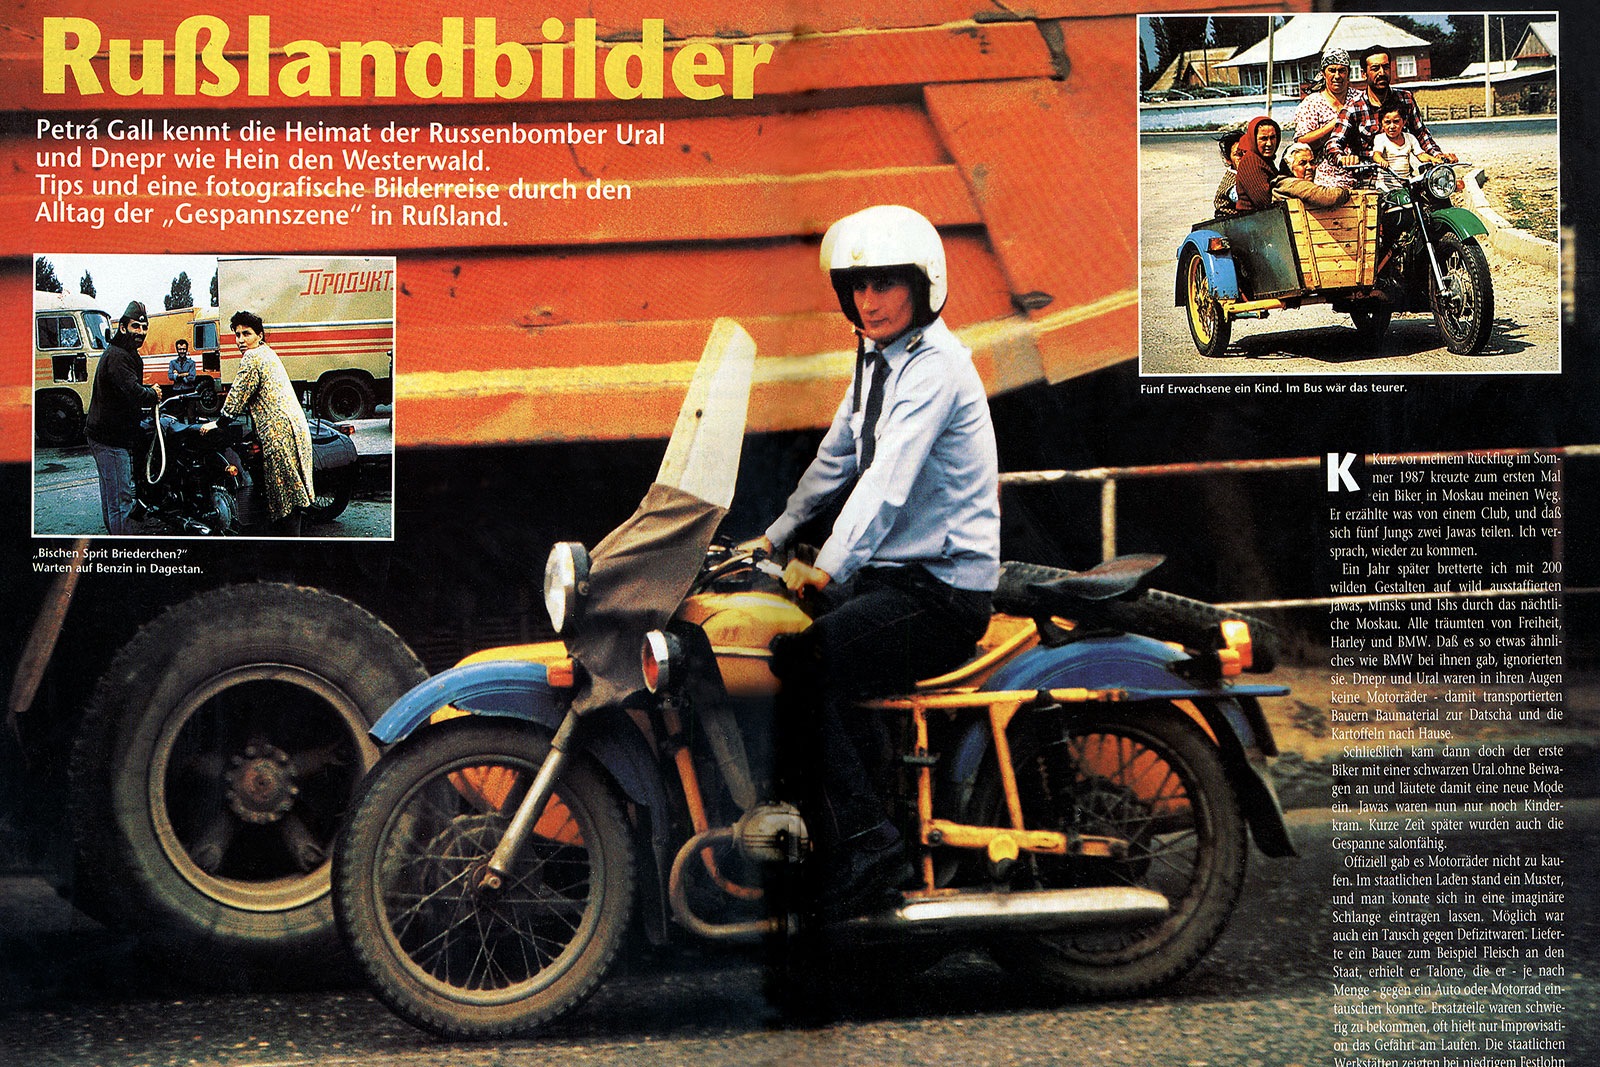 Фото Петры Галл для журнала Motorrad,1993